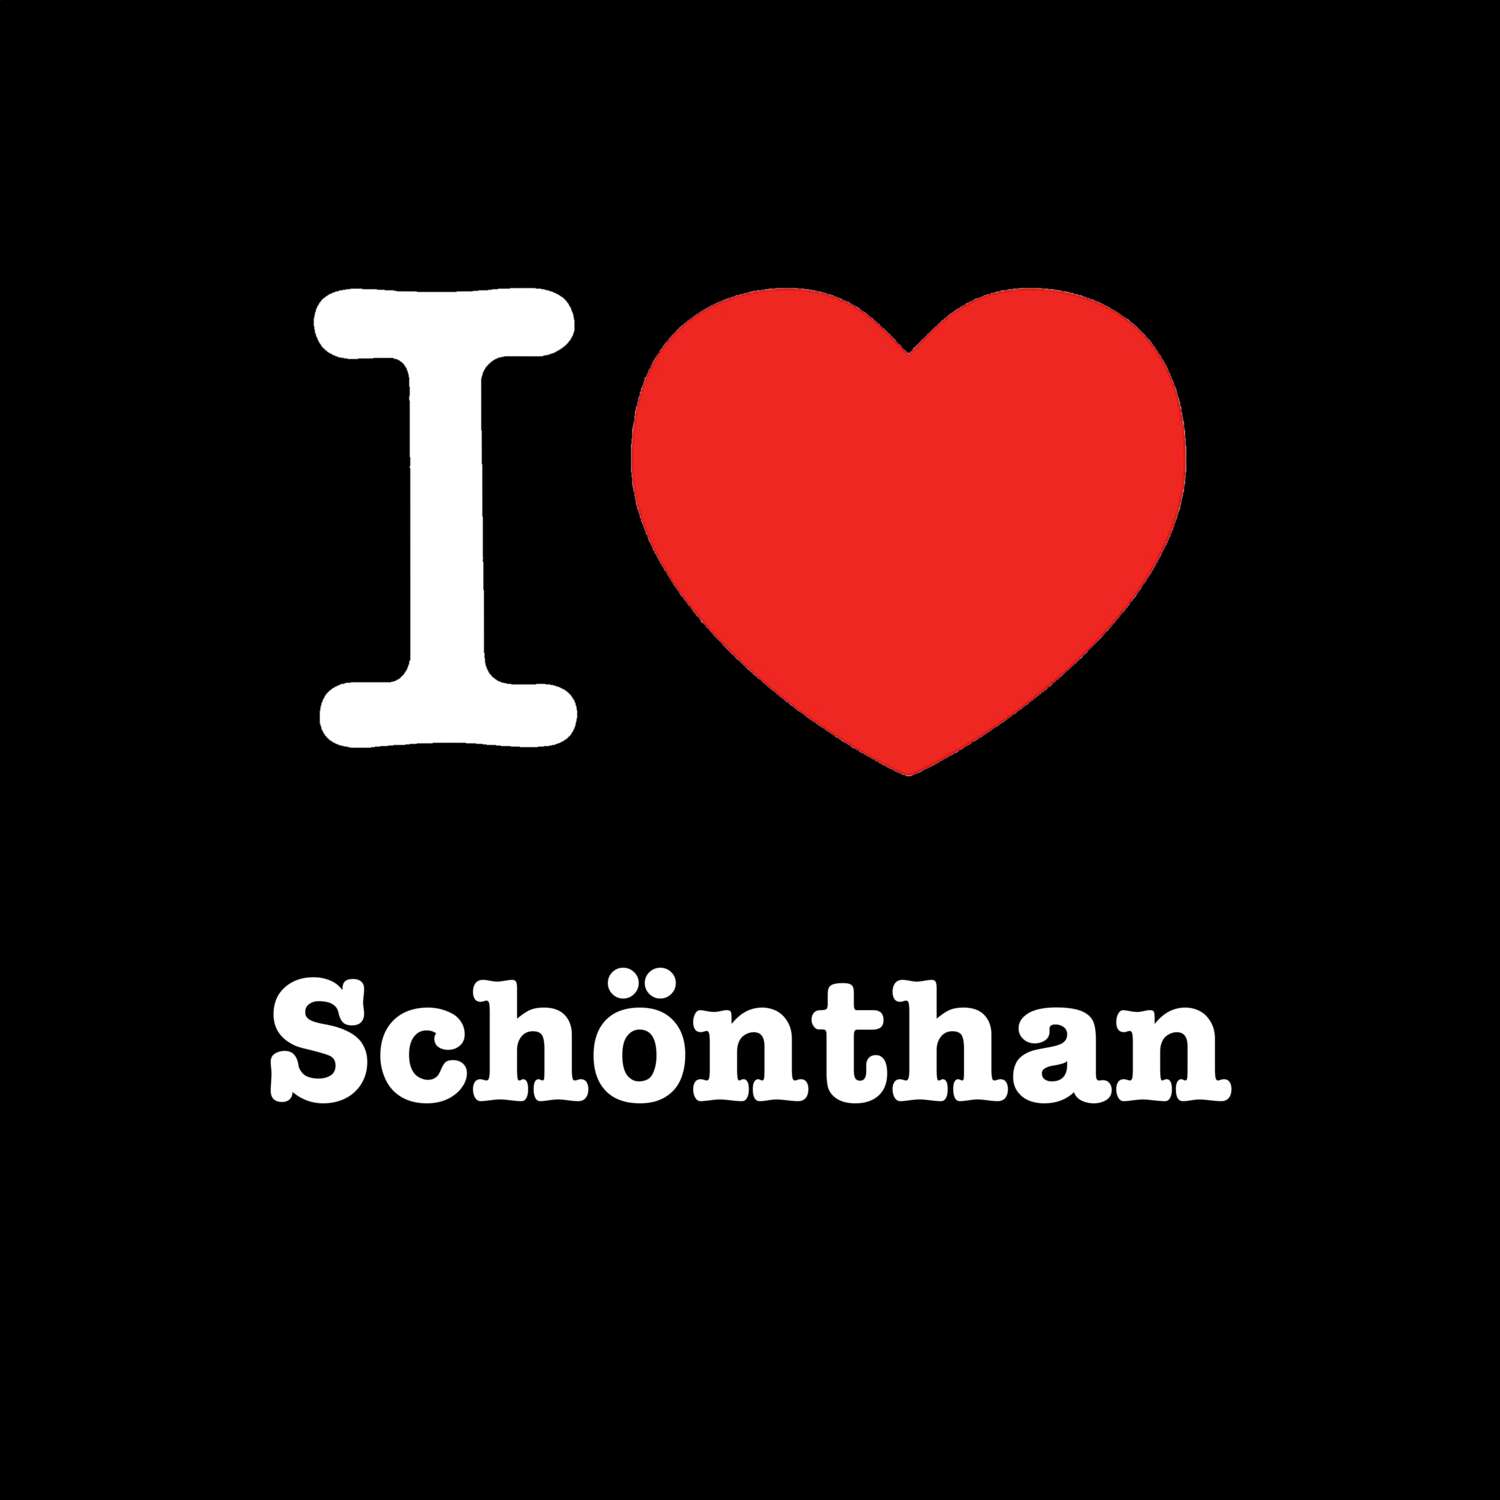 Schönthan T-Shirt »I love«